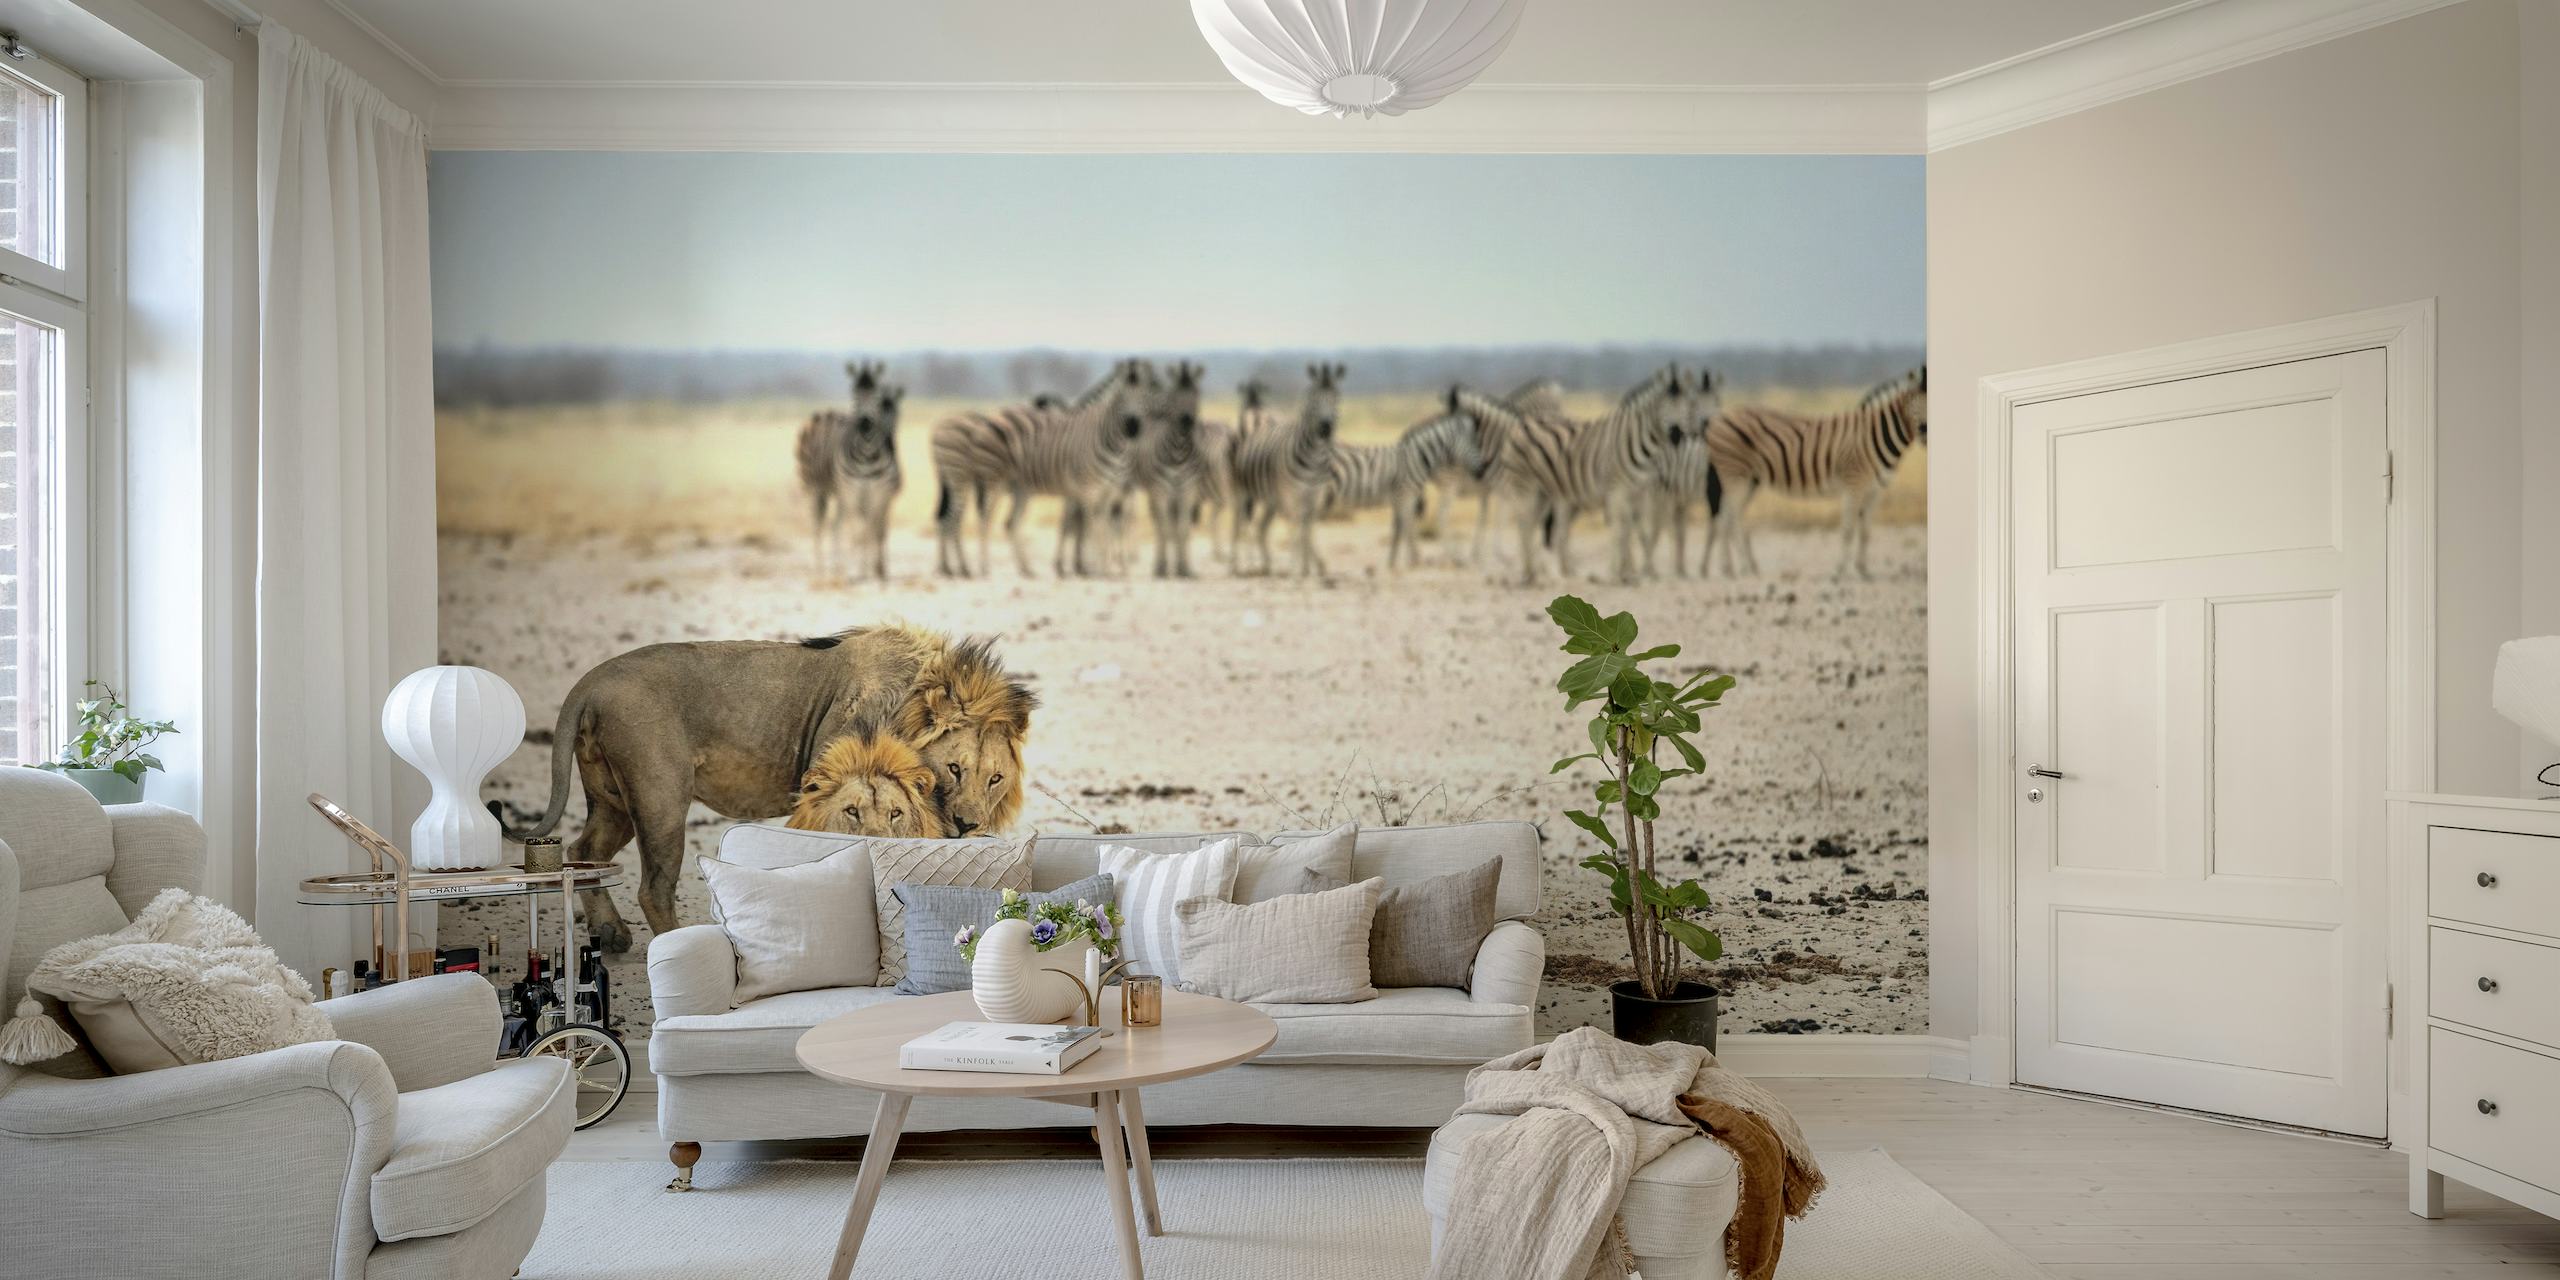 Löwen und Zebras in einer afrikanischen Savannenwandmalerei